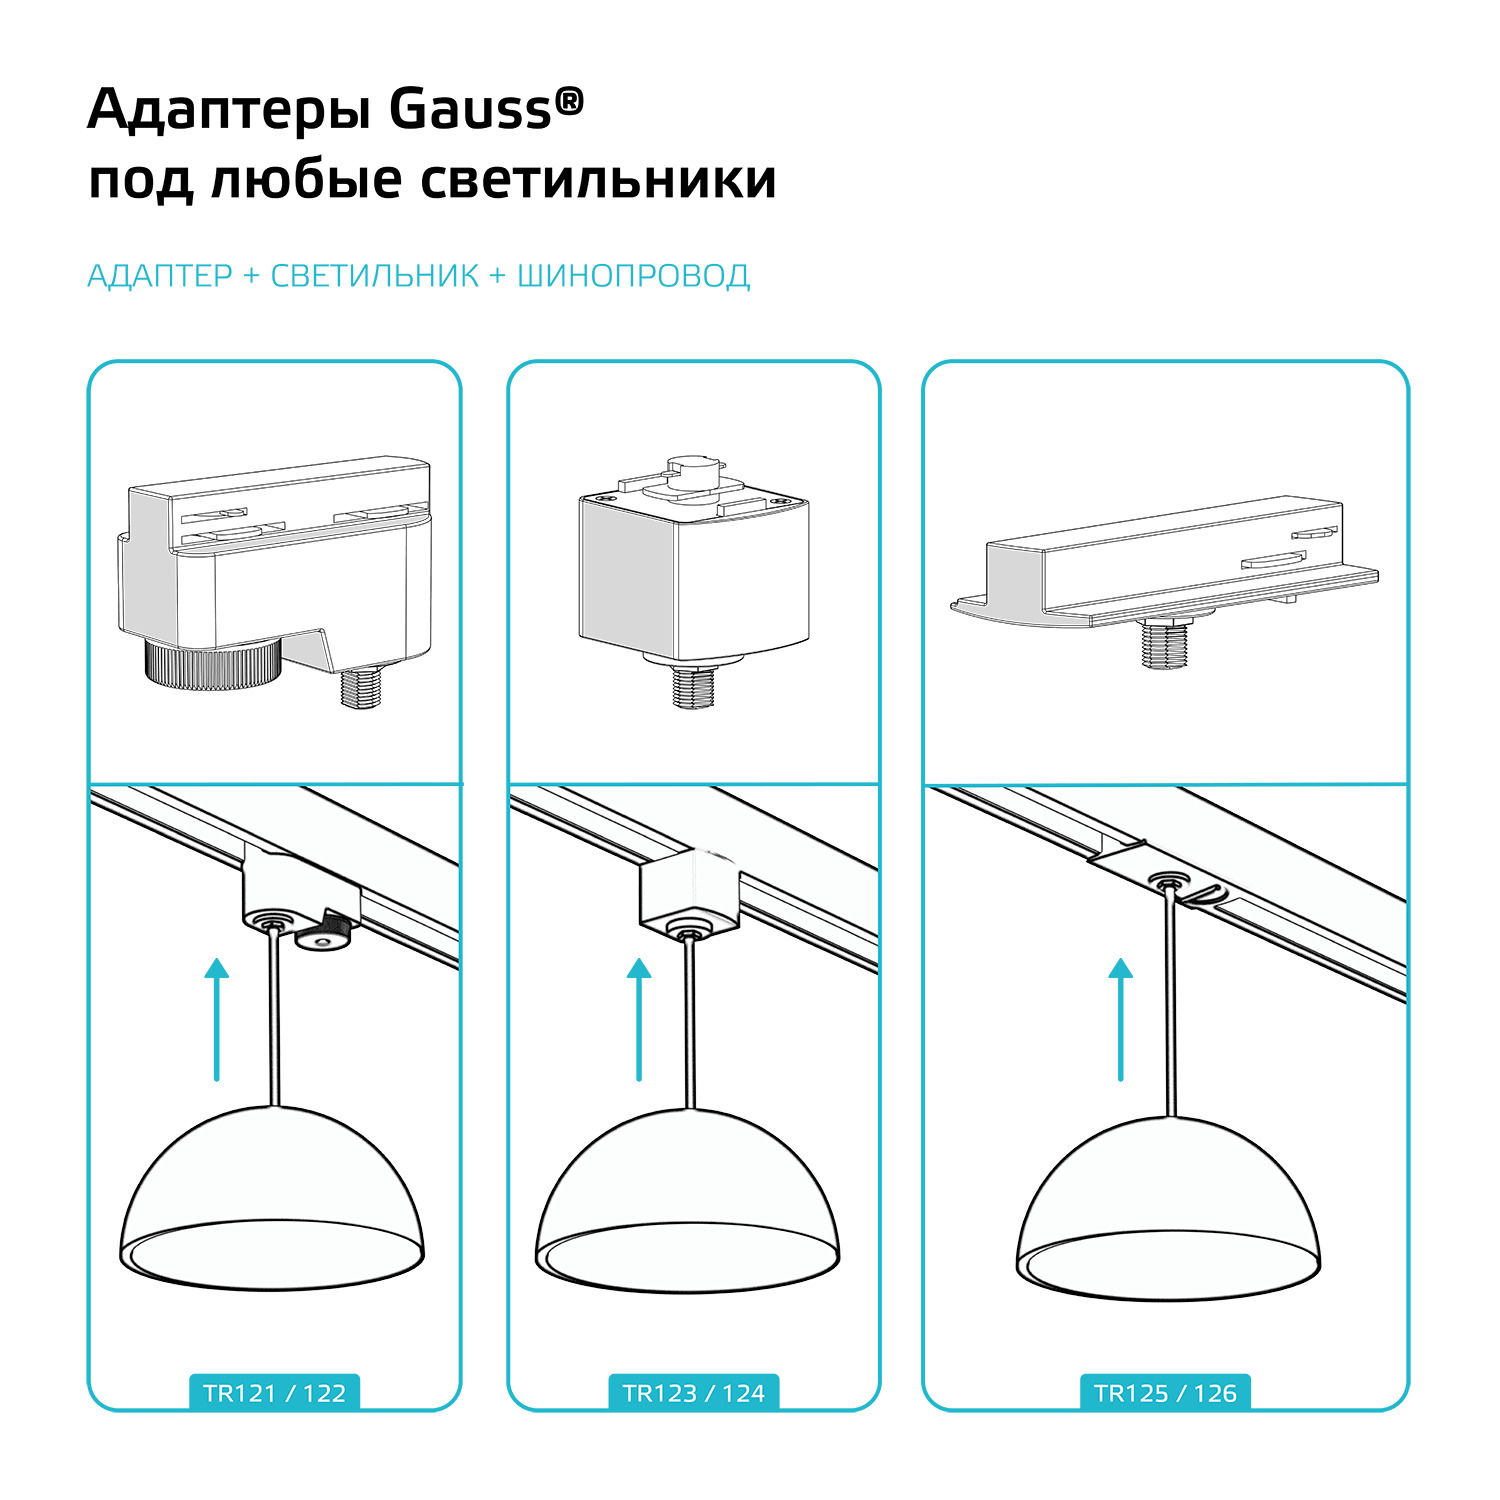 Как прикрепить лампу к столу на крепление схема